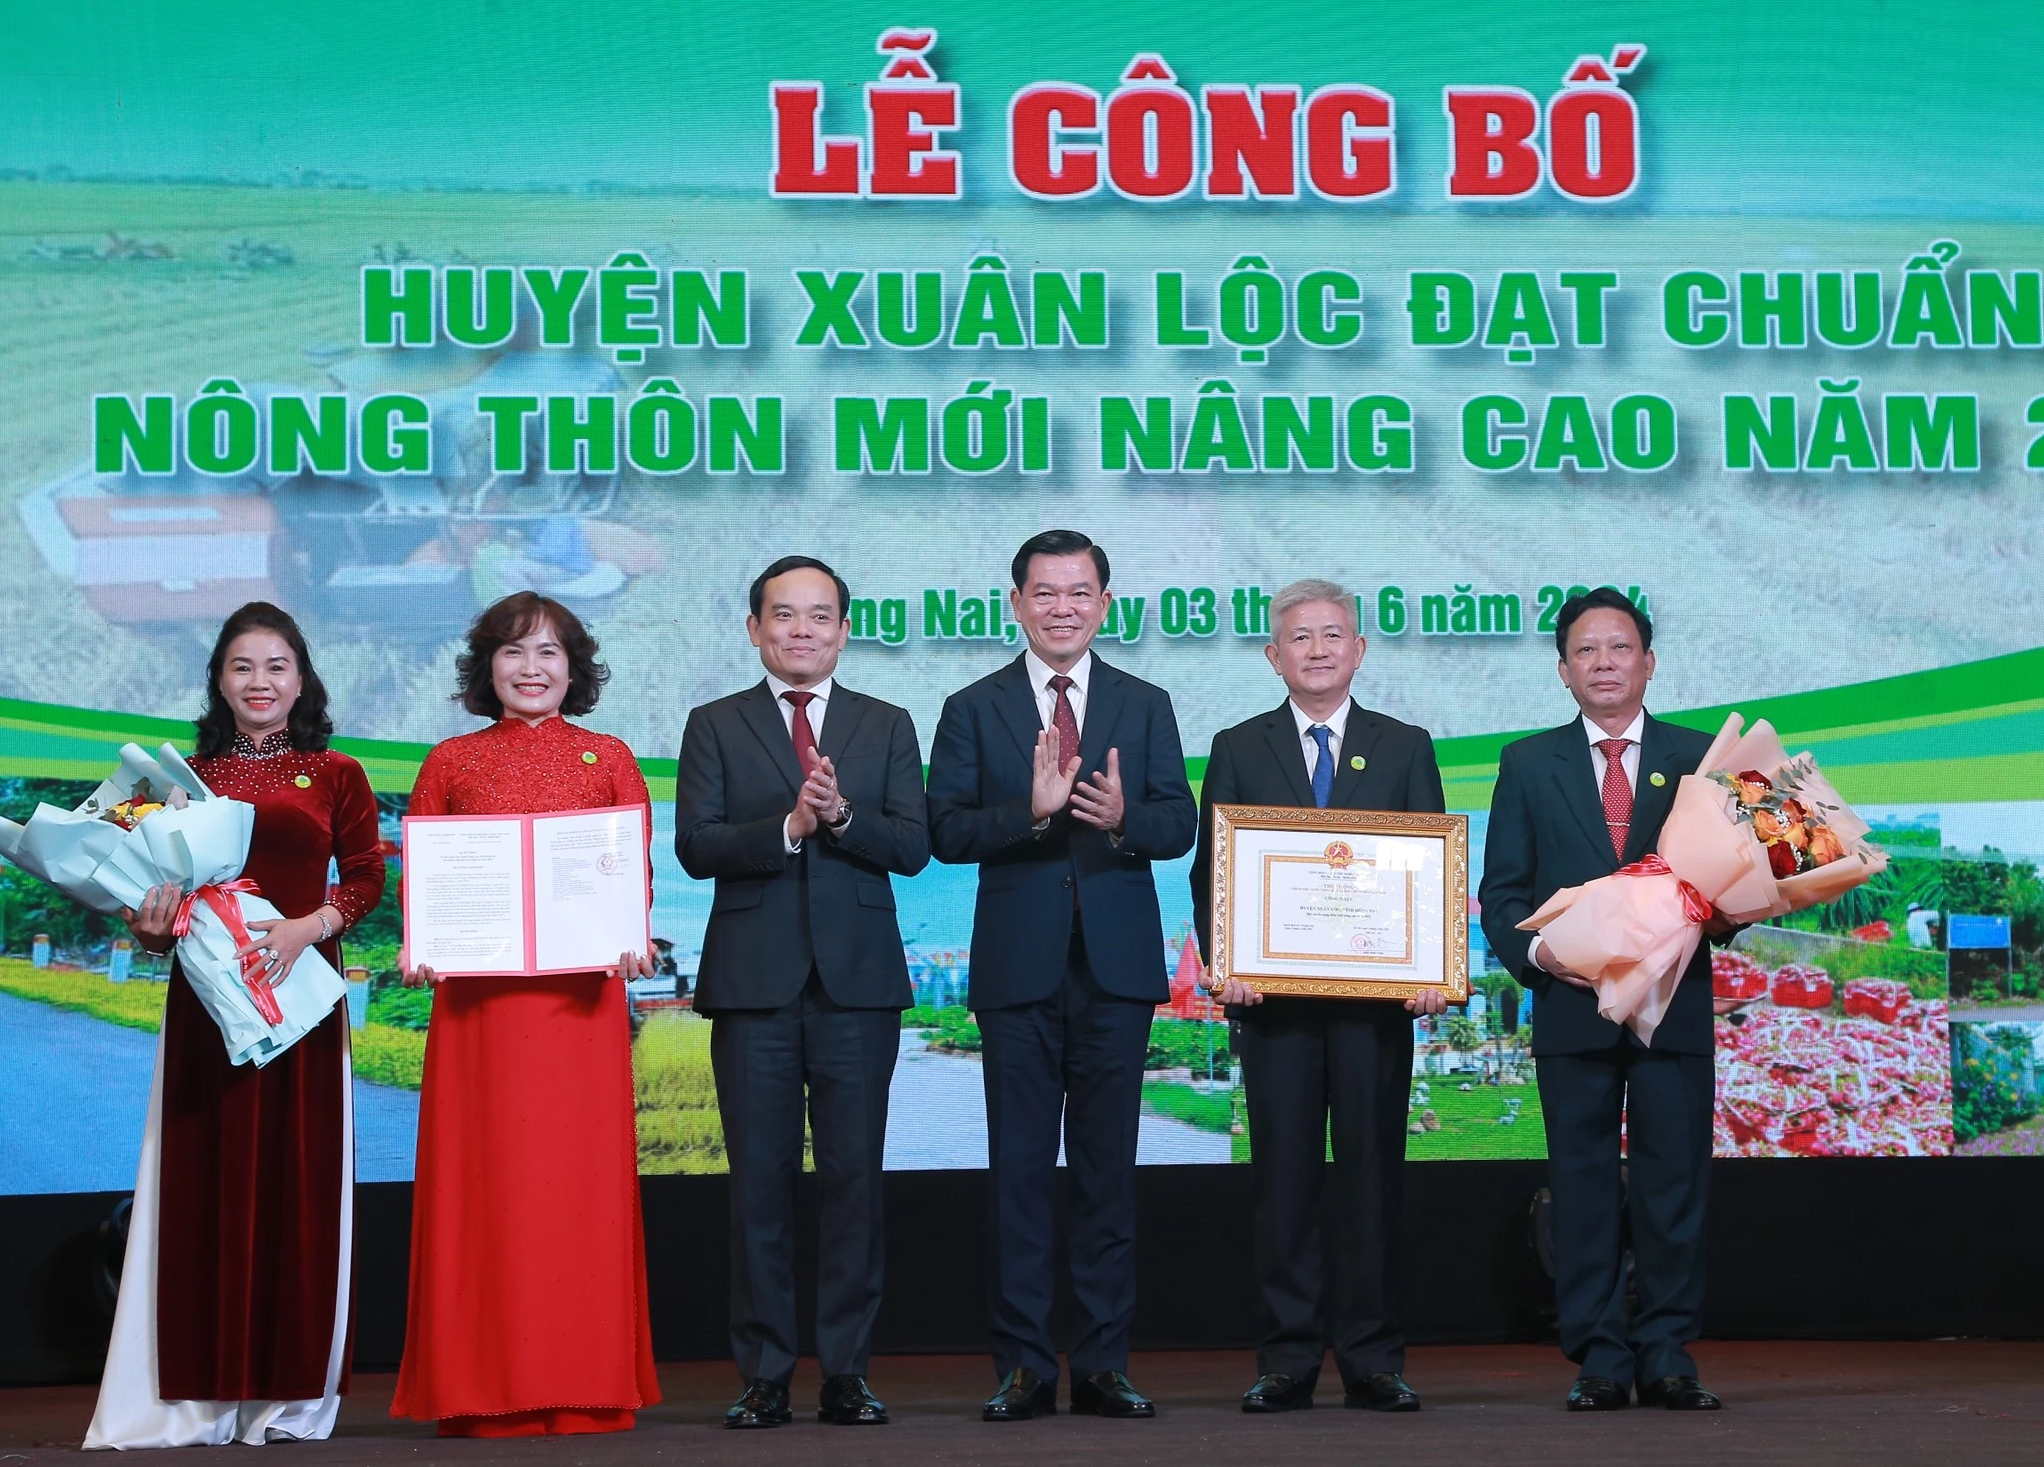 Đồng Nai: Xuân Lộc được công nhận huyện nông thôn mới nâng cao